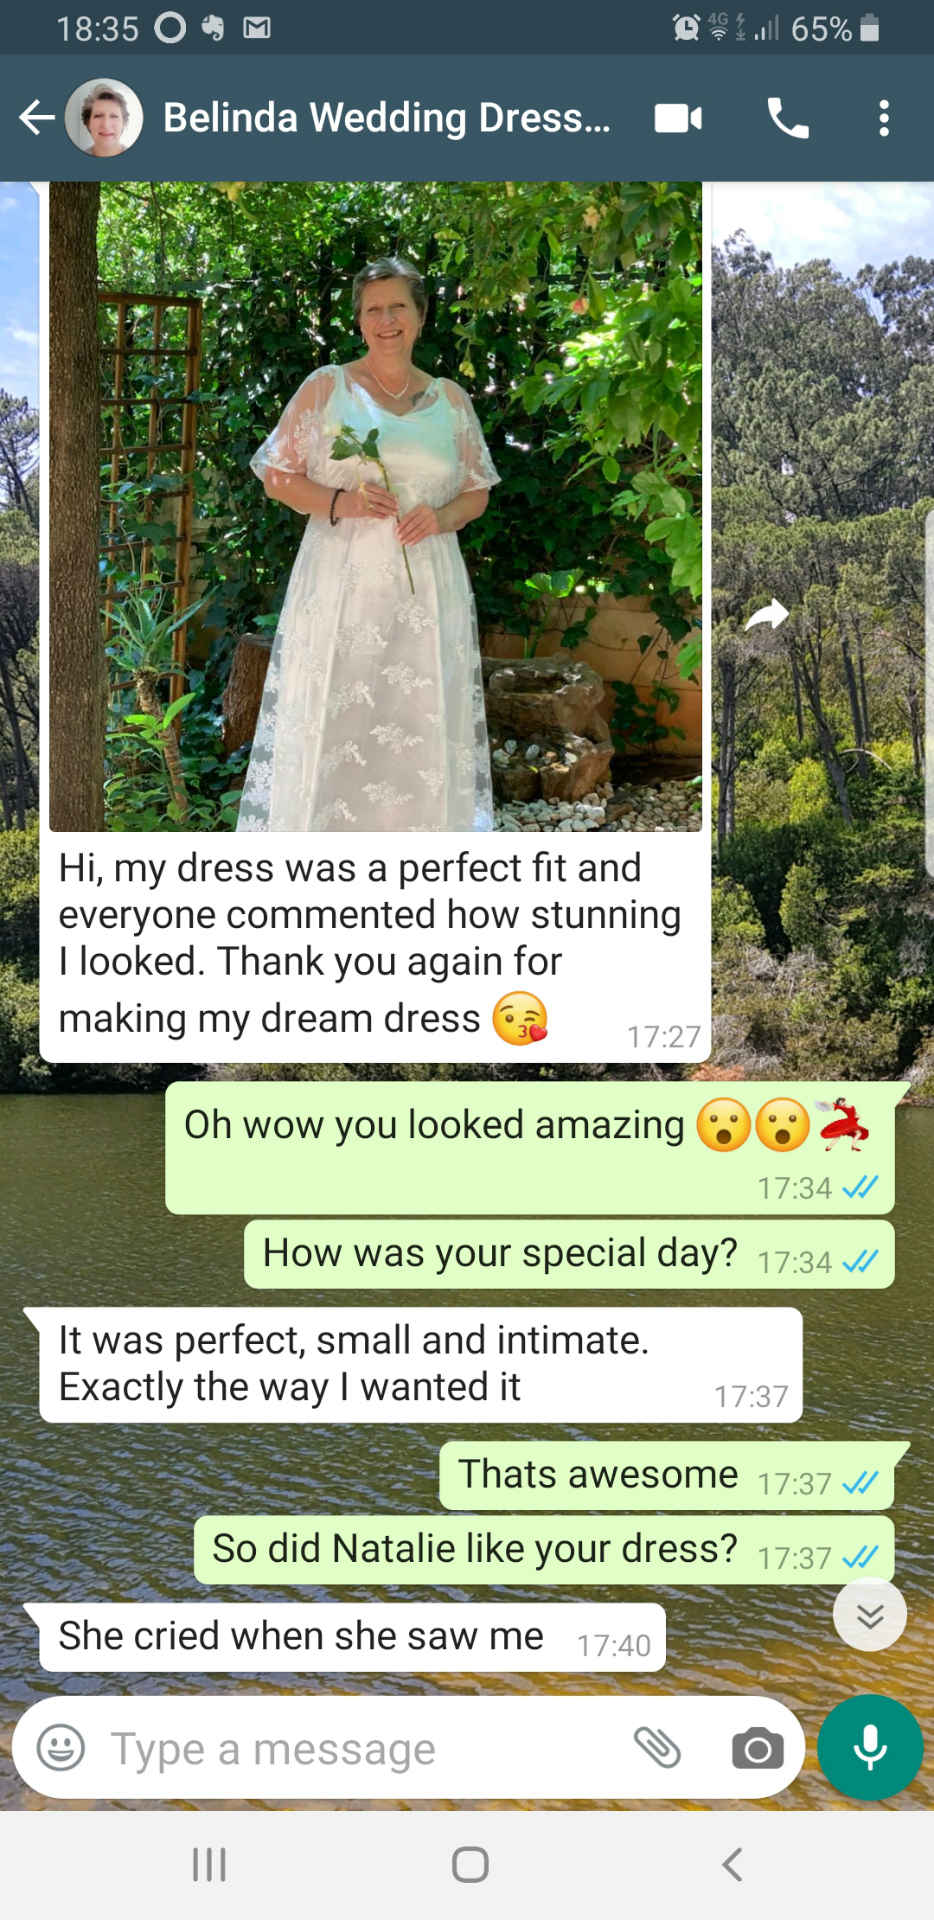 Belinda - wedding dress client 2